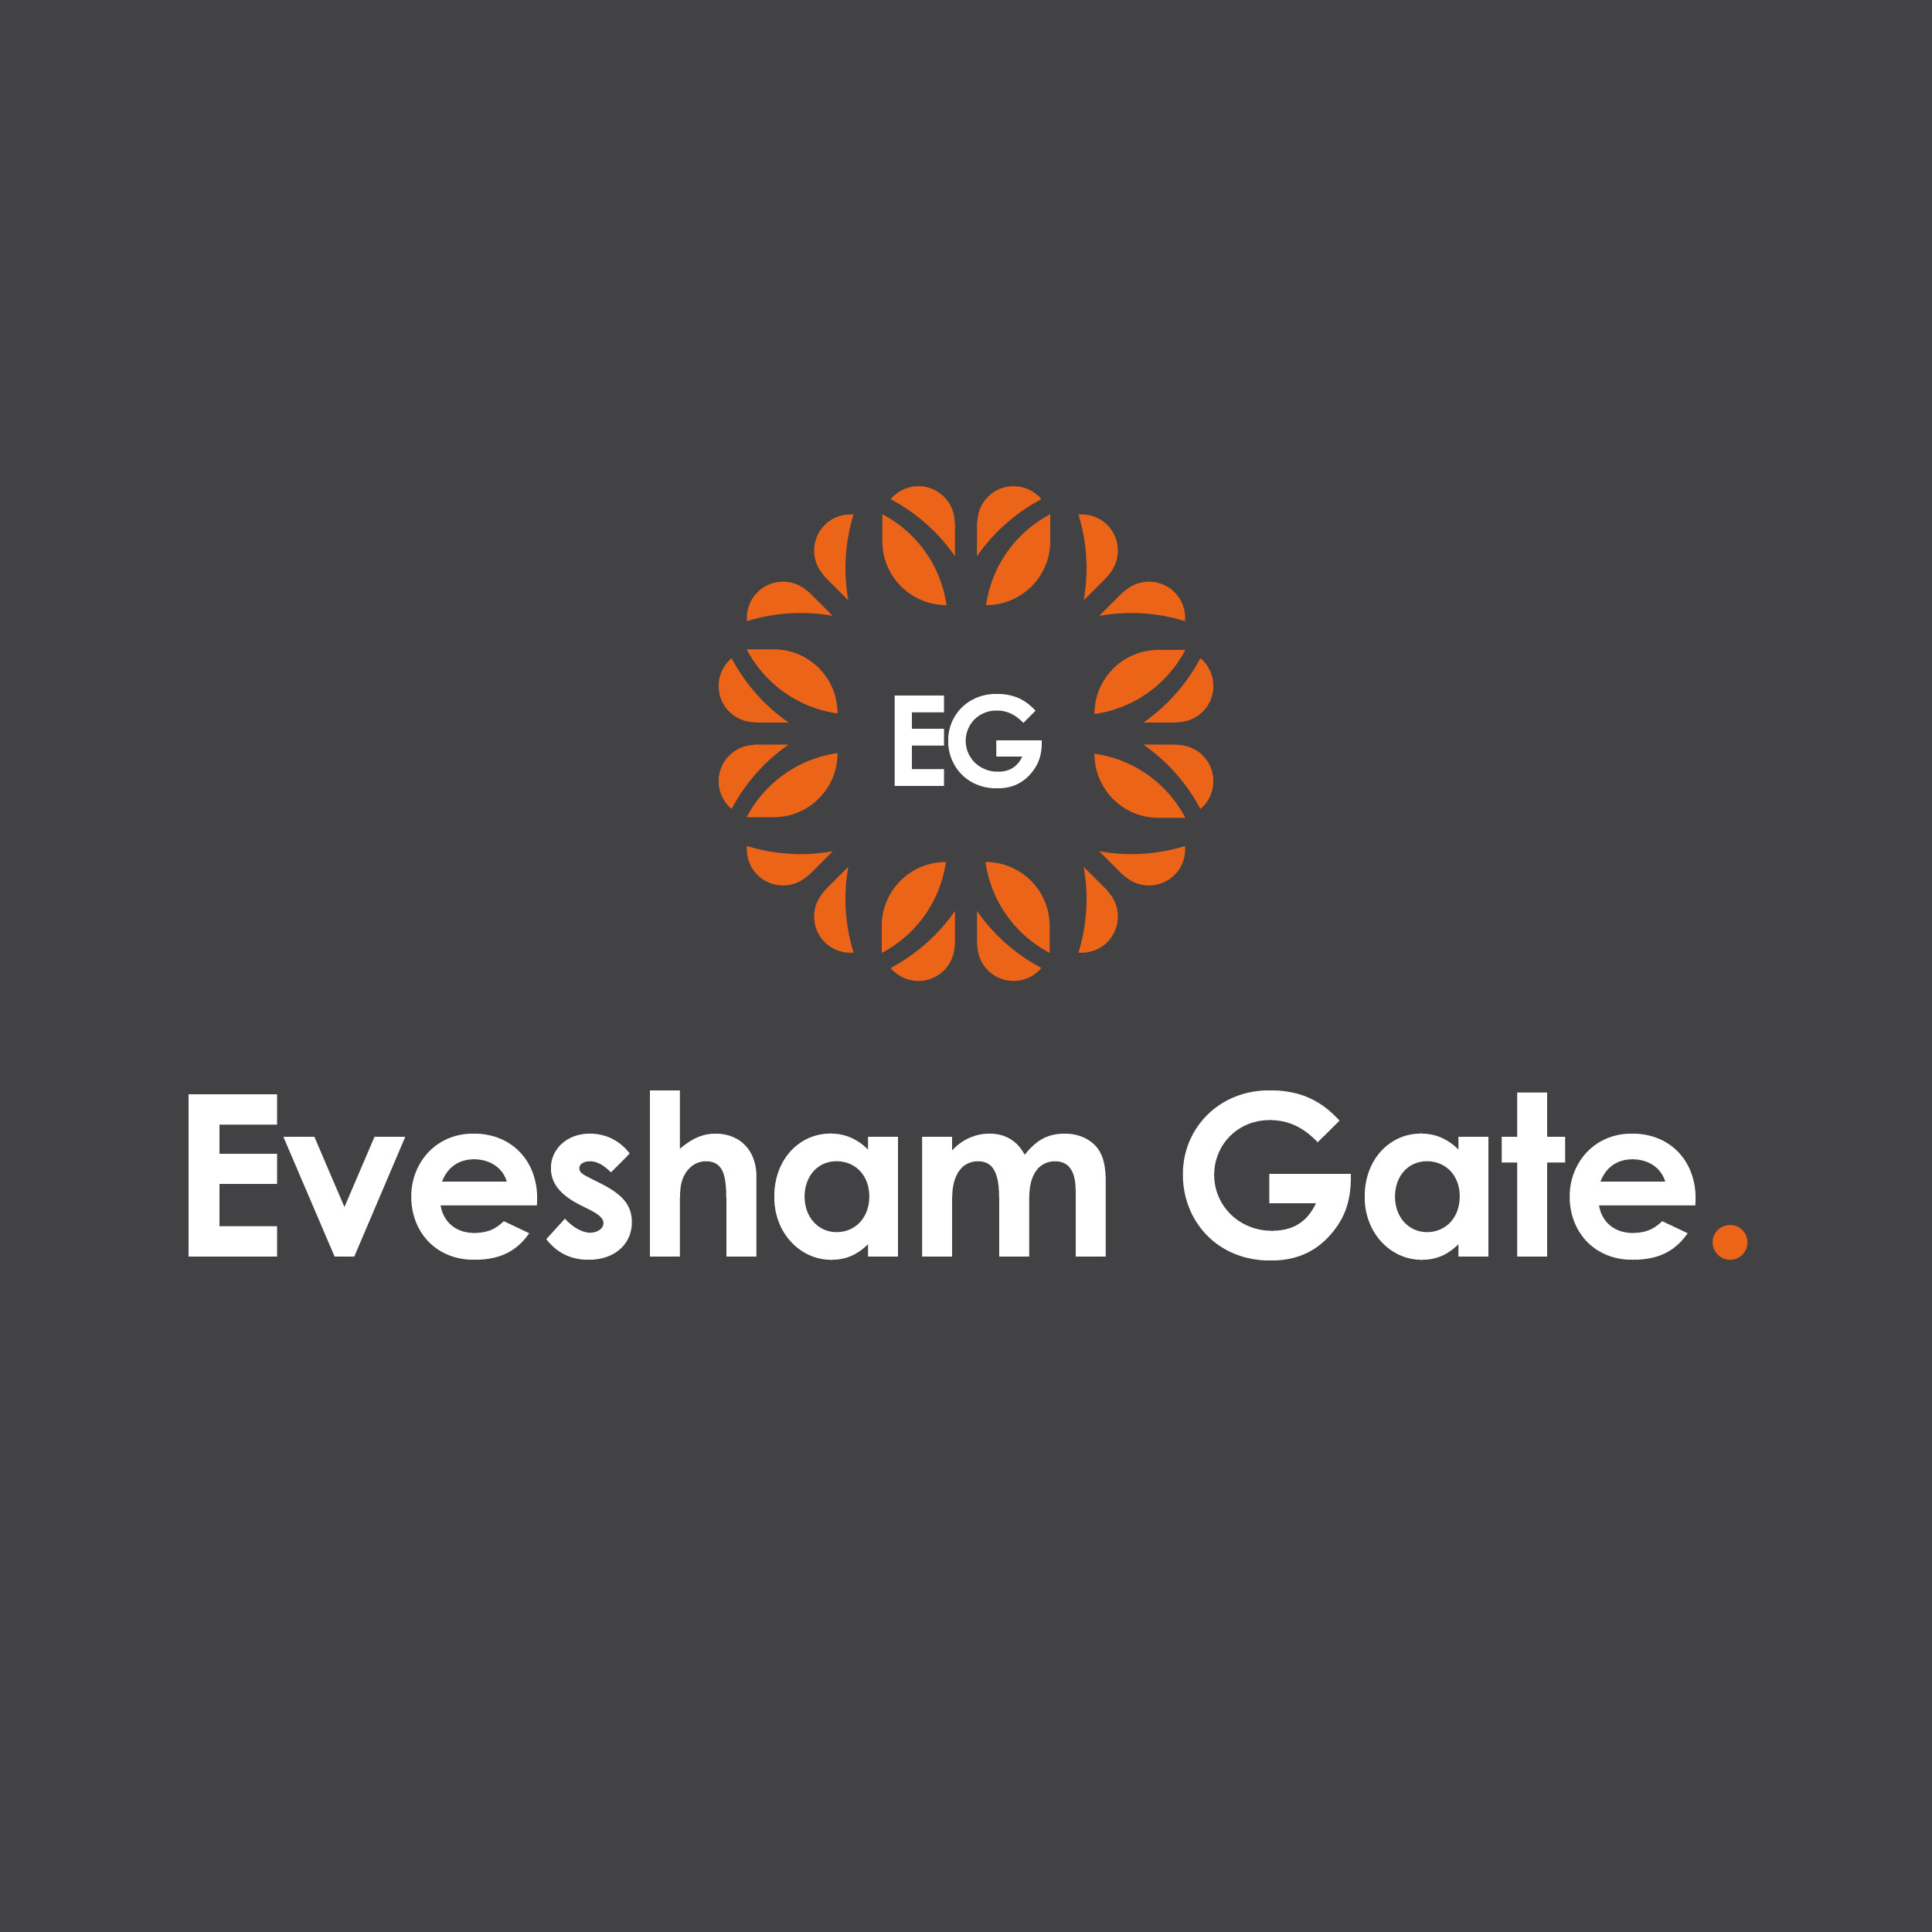 Evesham Gate Crest